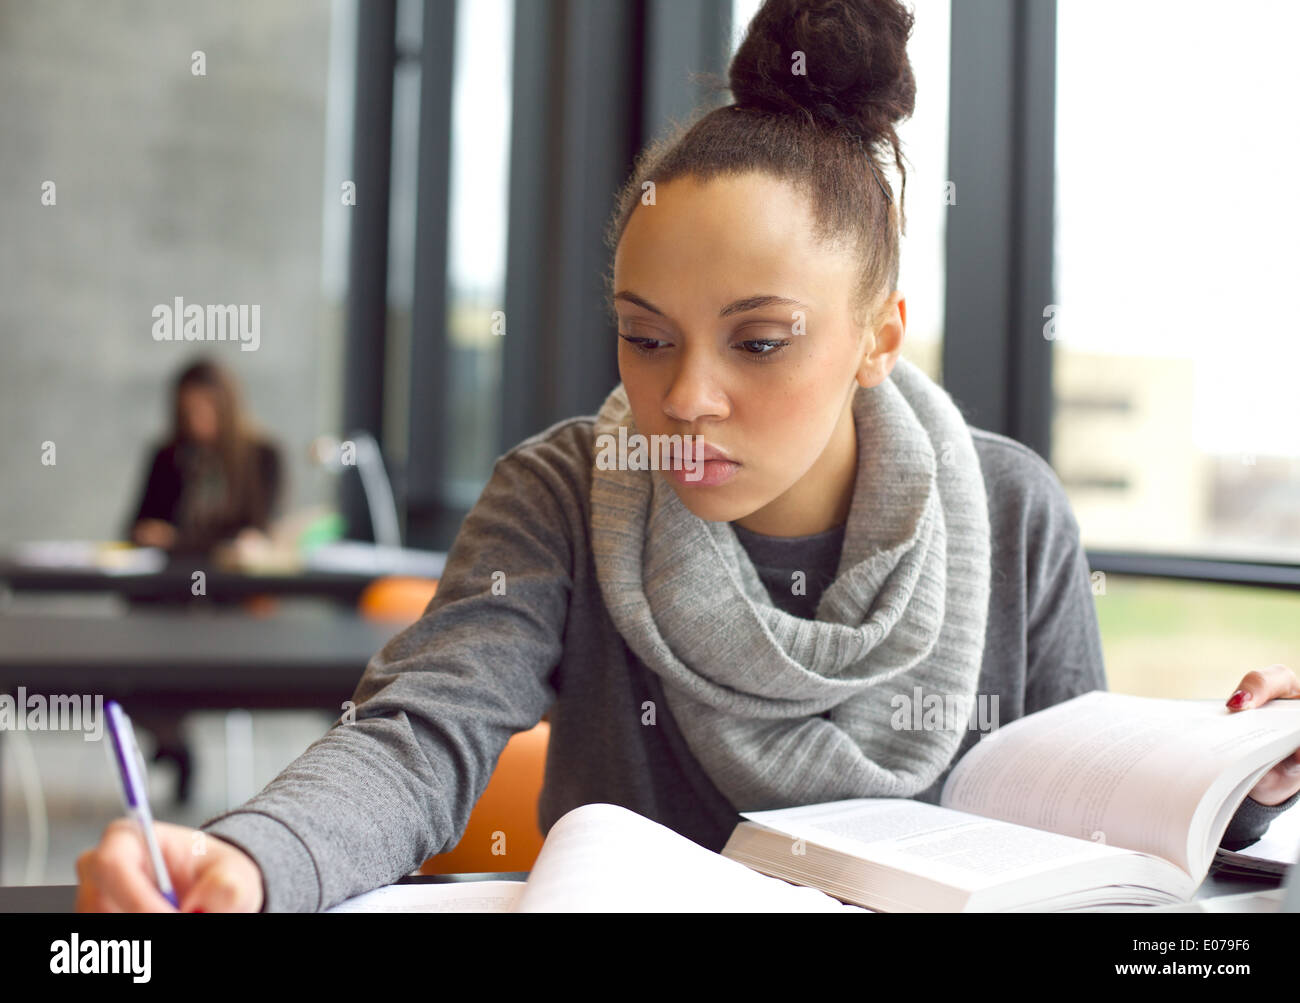 Chiudere l immagine di una giovane studentessa svolgendo incarichi in libreria. Afro American donna prendendo appunti da libri di testo. Foto Stock